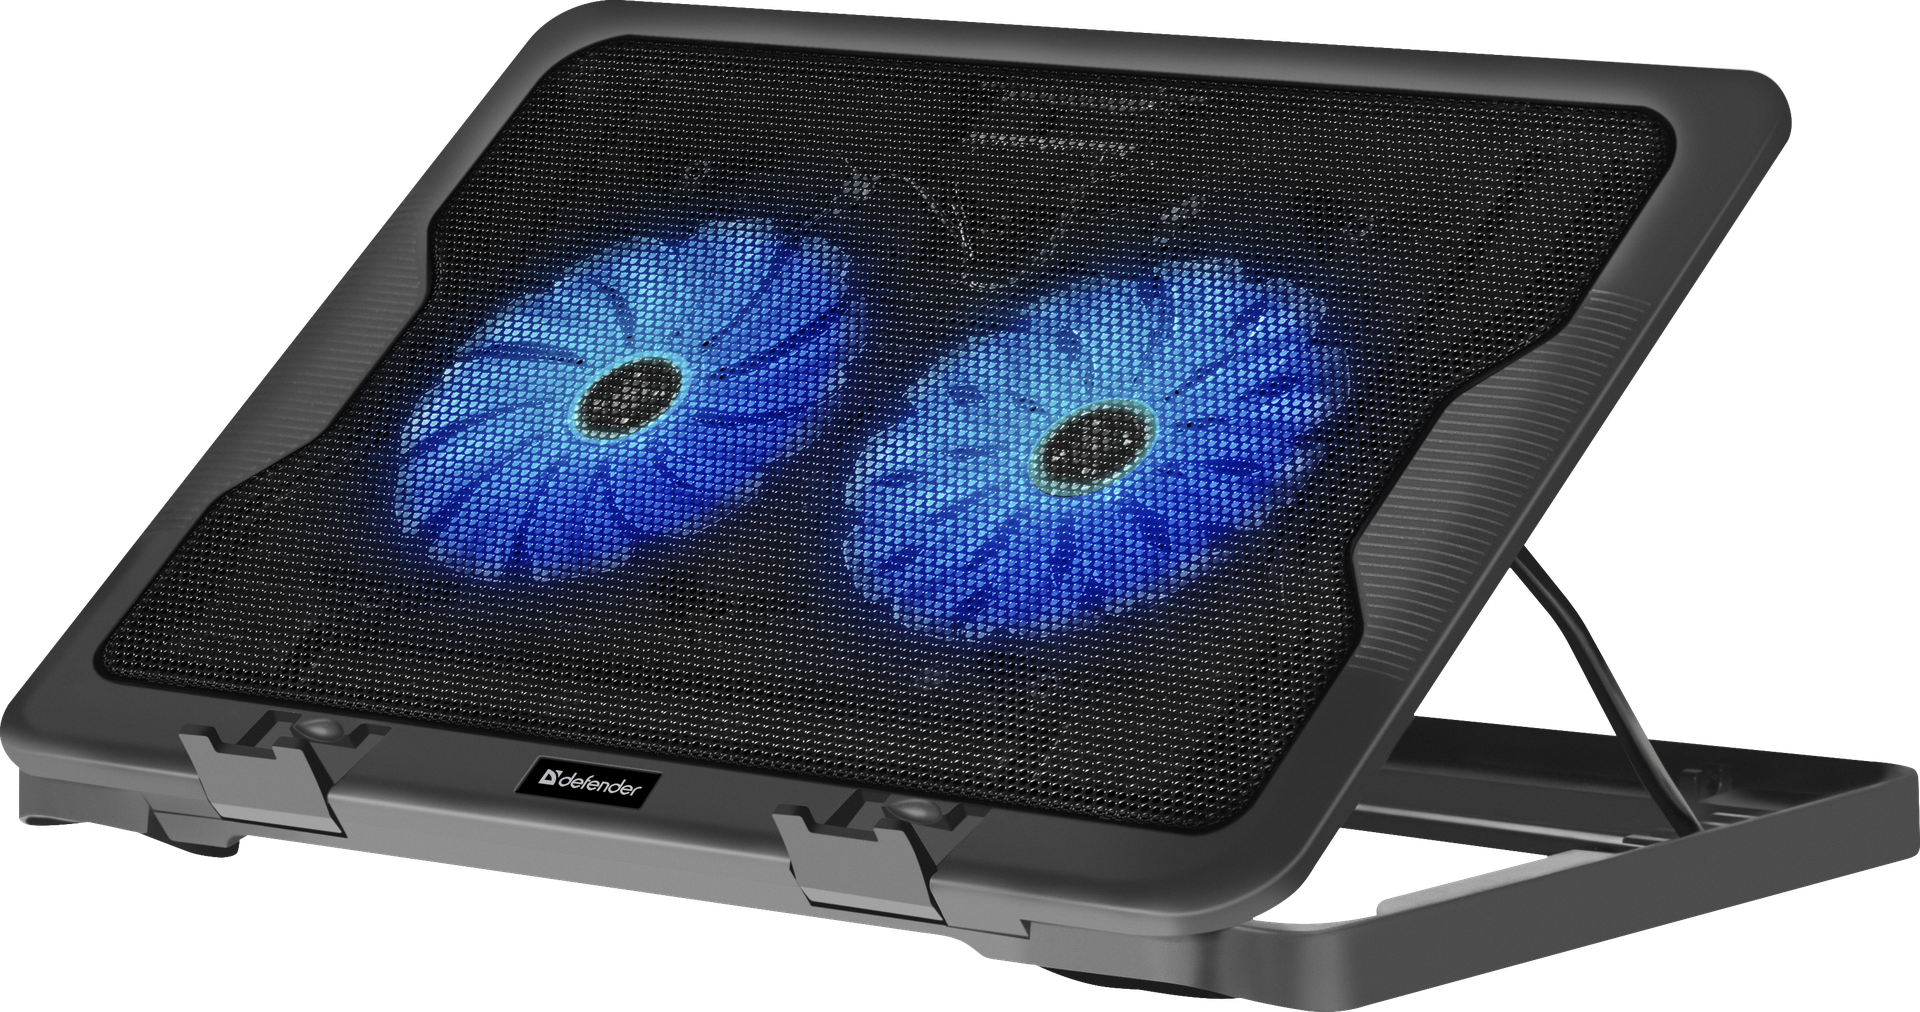 Охлаждающая подставка для ноутбука 17" Defender NS-503, вентилятор: 2x126 мм, синяя подсветка, 2xUSB, металл, пластик, черный (29503)